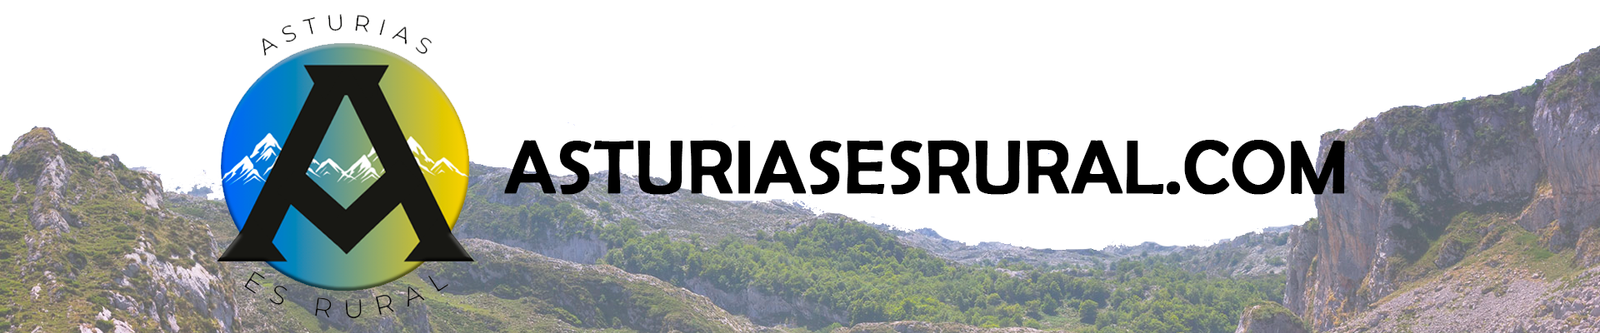 asturiasesrural.com